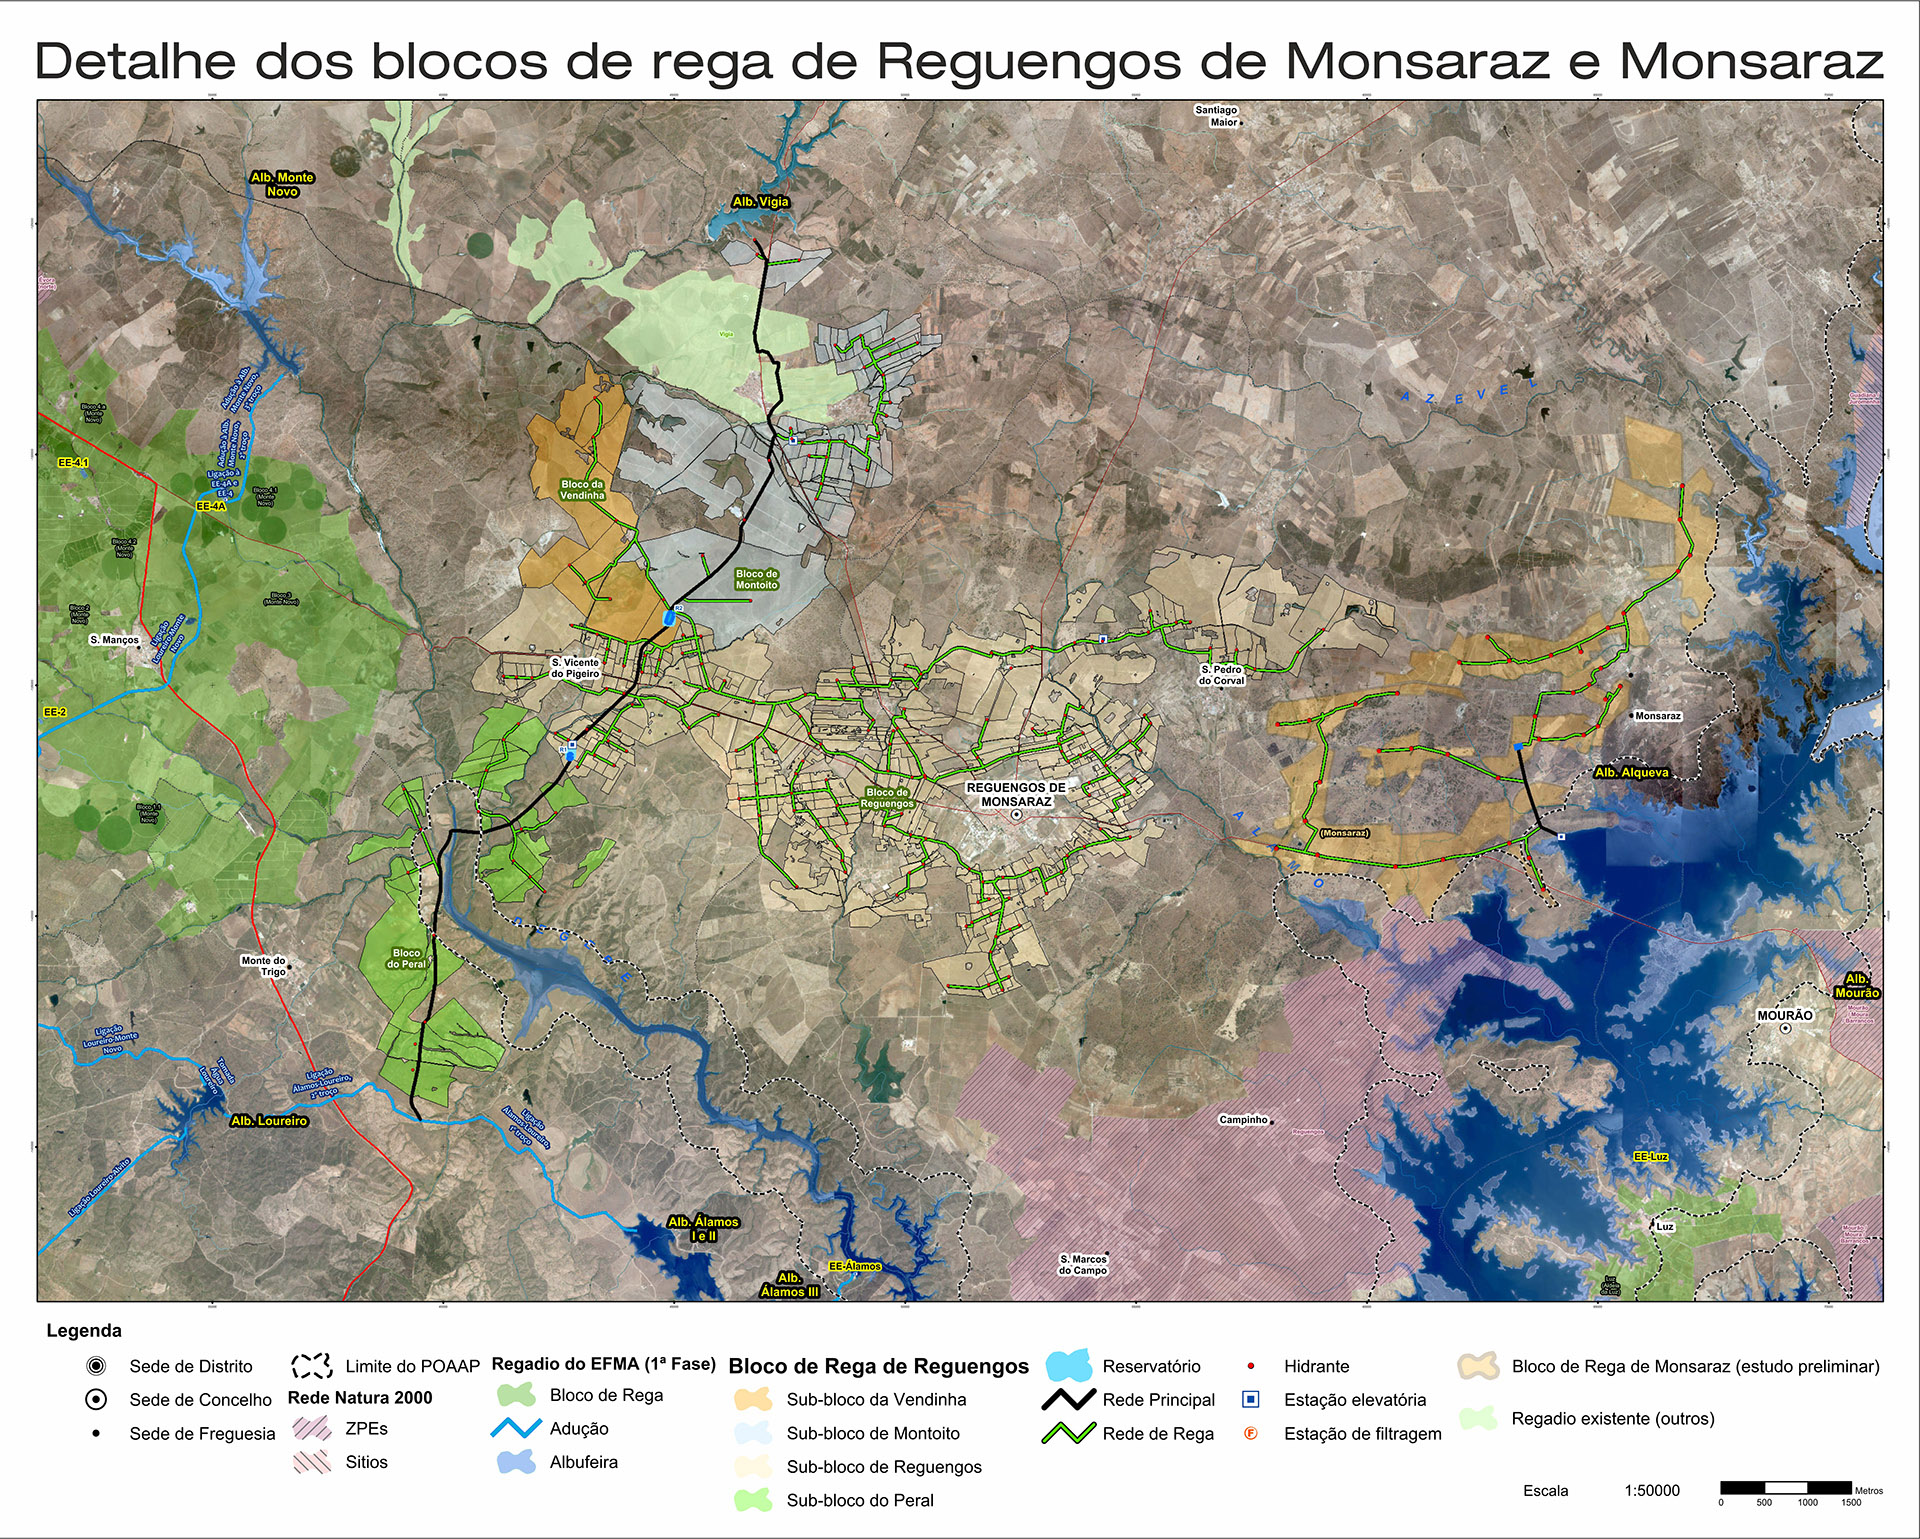 Mapa com detalhe dos blocos de rega em Reguengos de Monsaraz